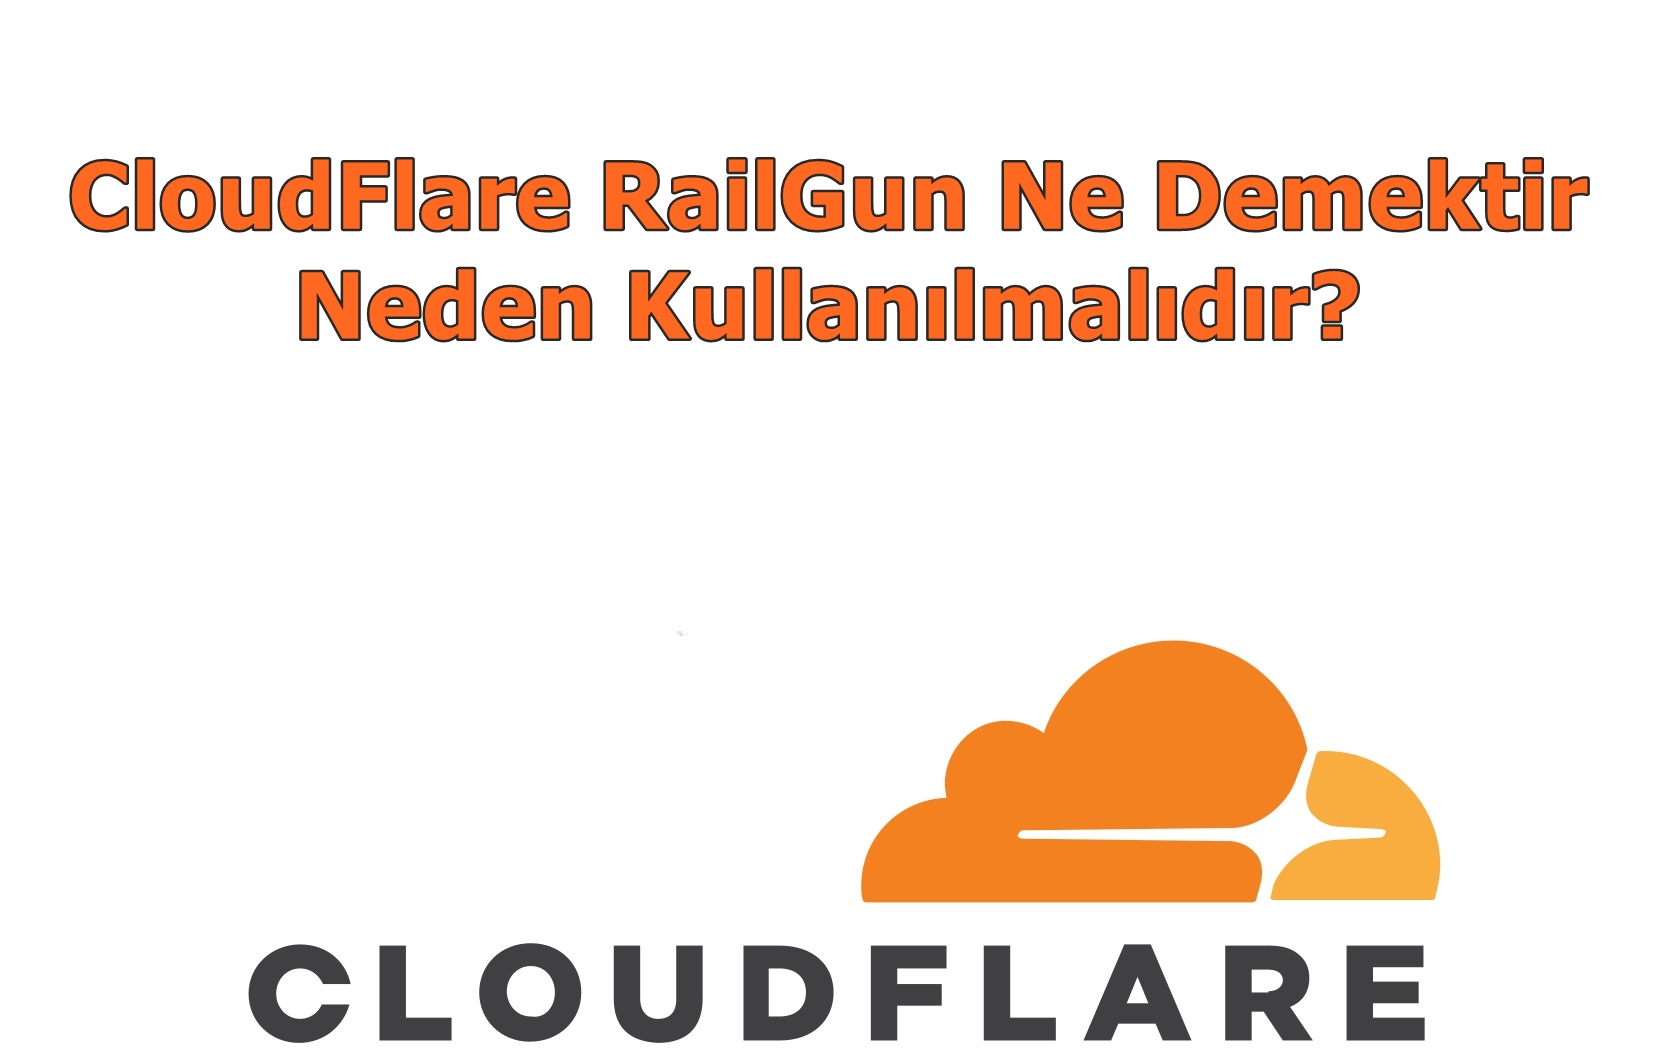 CloudFlare RailGun Ne Demektir, Neden Kullanılmalıdır?